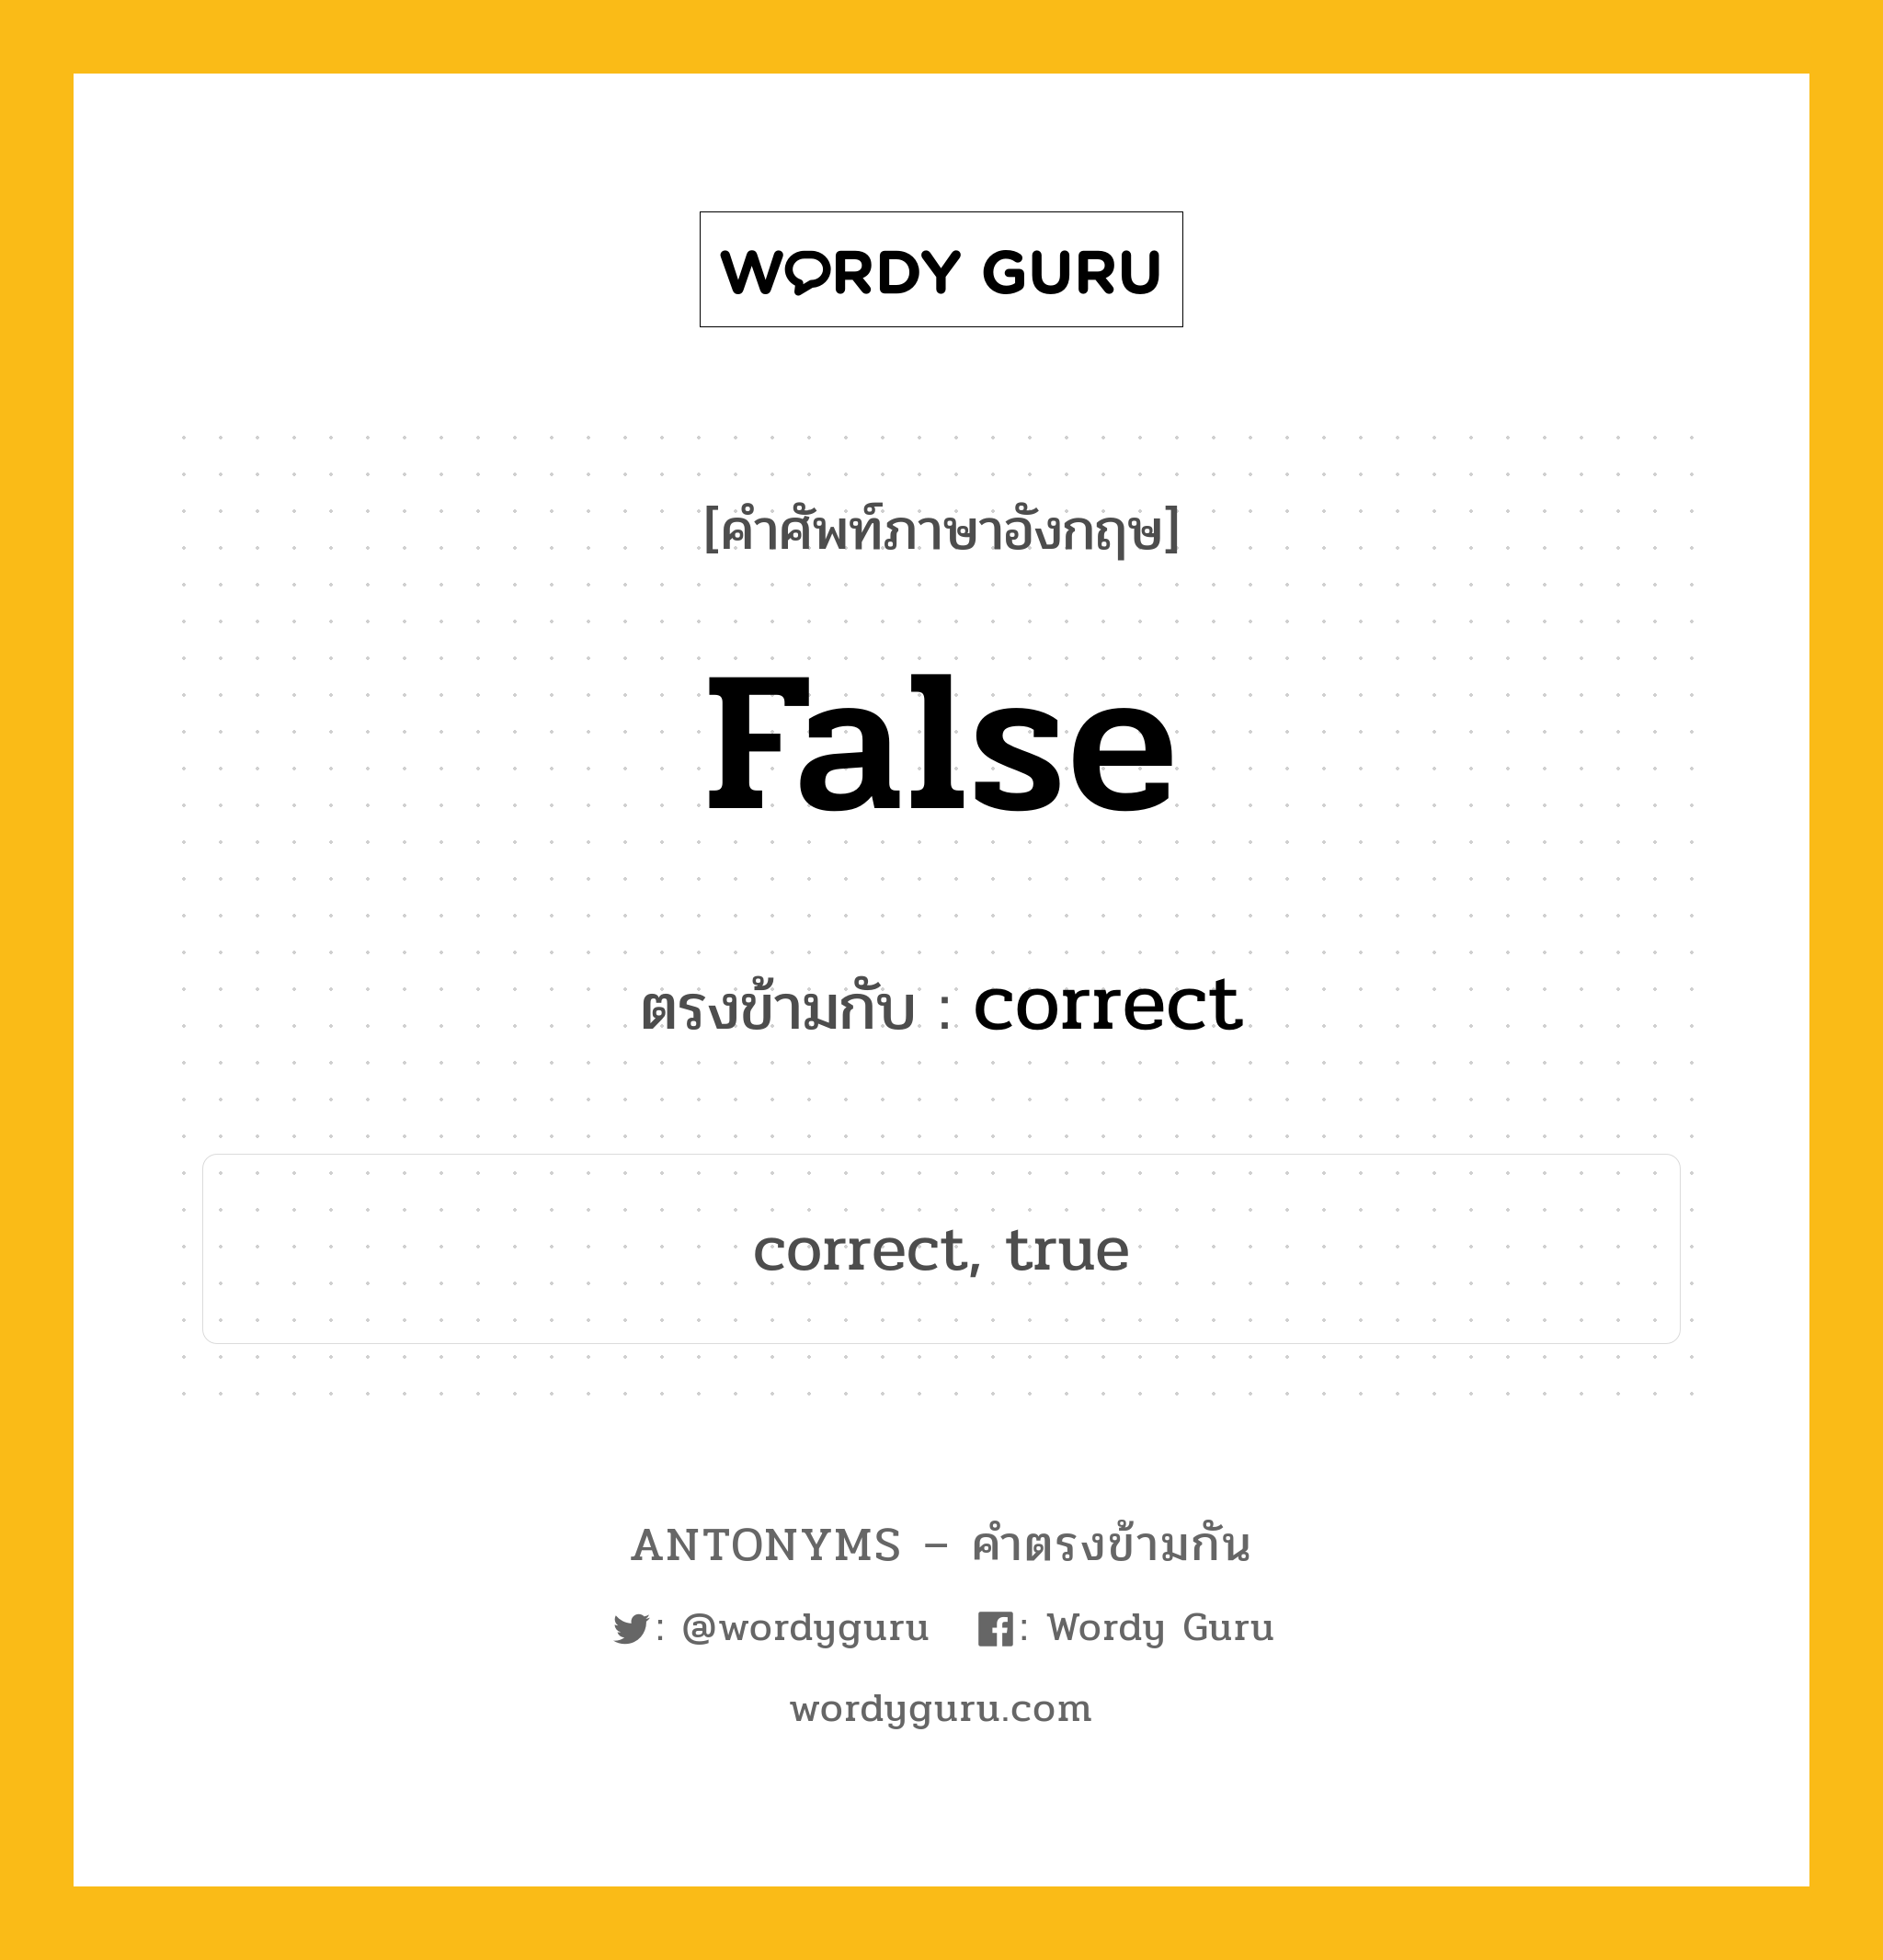 false เป็นคำตรงข้ามกับคำไหนบ้าง?, คำศัพท์ภาษาอังกฤษ false ตรงข้ามกับ correct หมวด correct